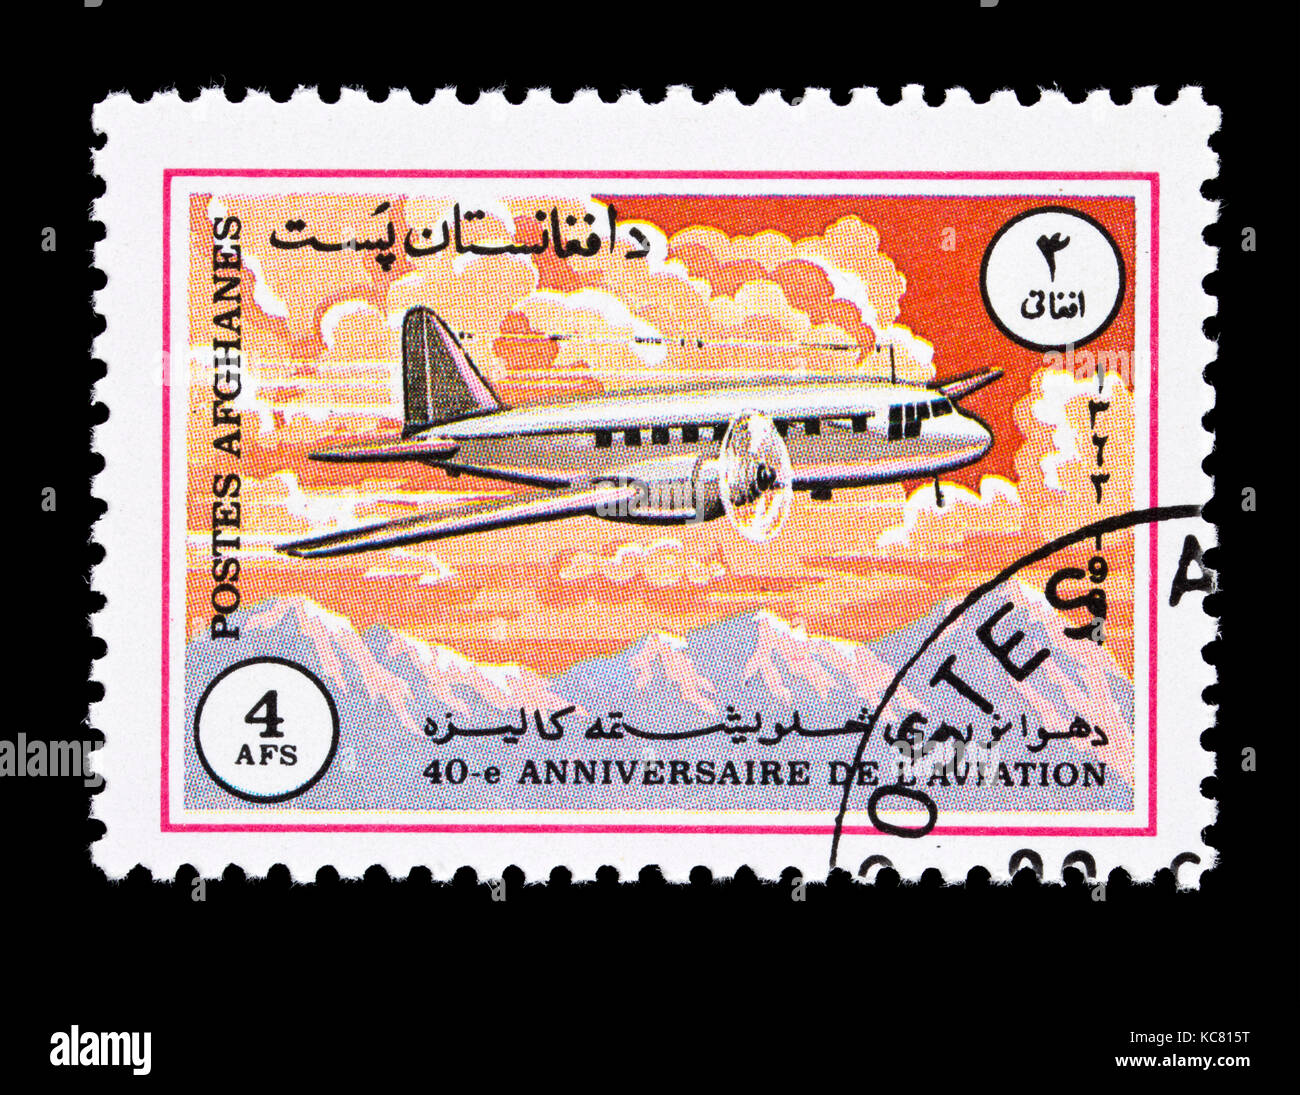 Timbre-poste d'Afghanistan représentant un Iliouchine IL-12 avion civil soviétique. Banque D'Images